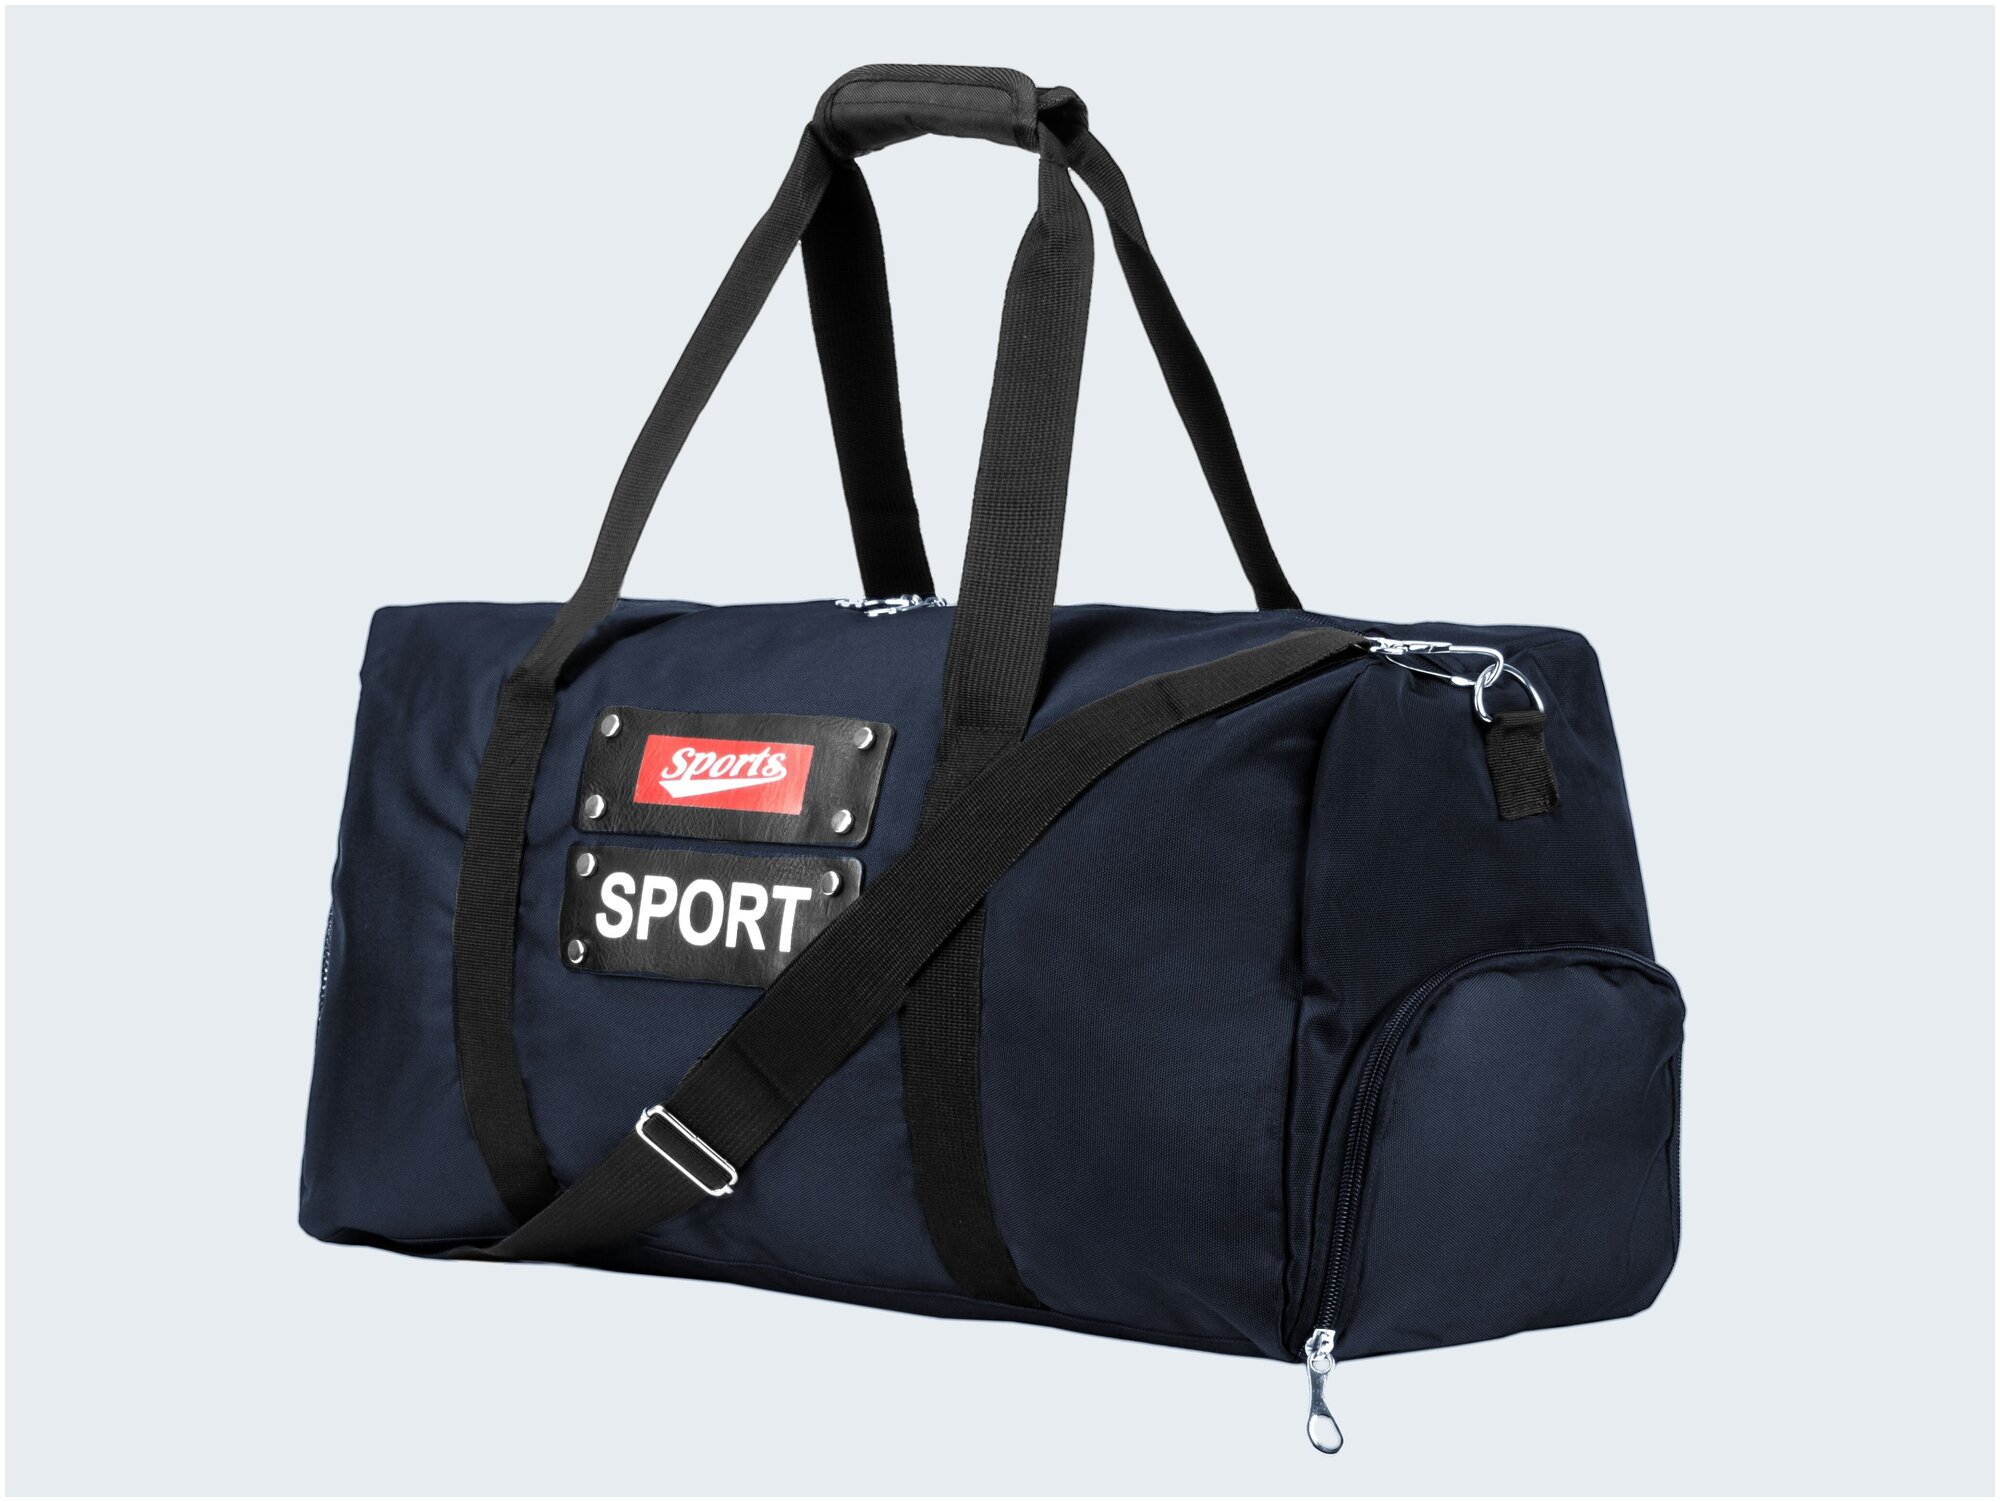 Дорожная сумка спортивная синяя большая женская мужская в подарок